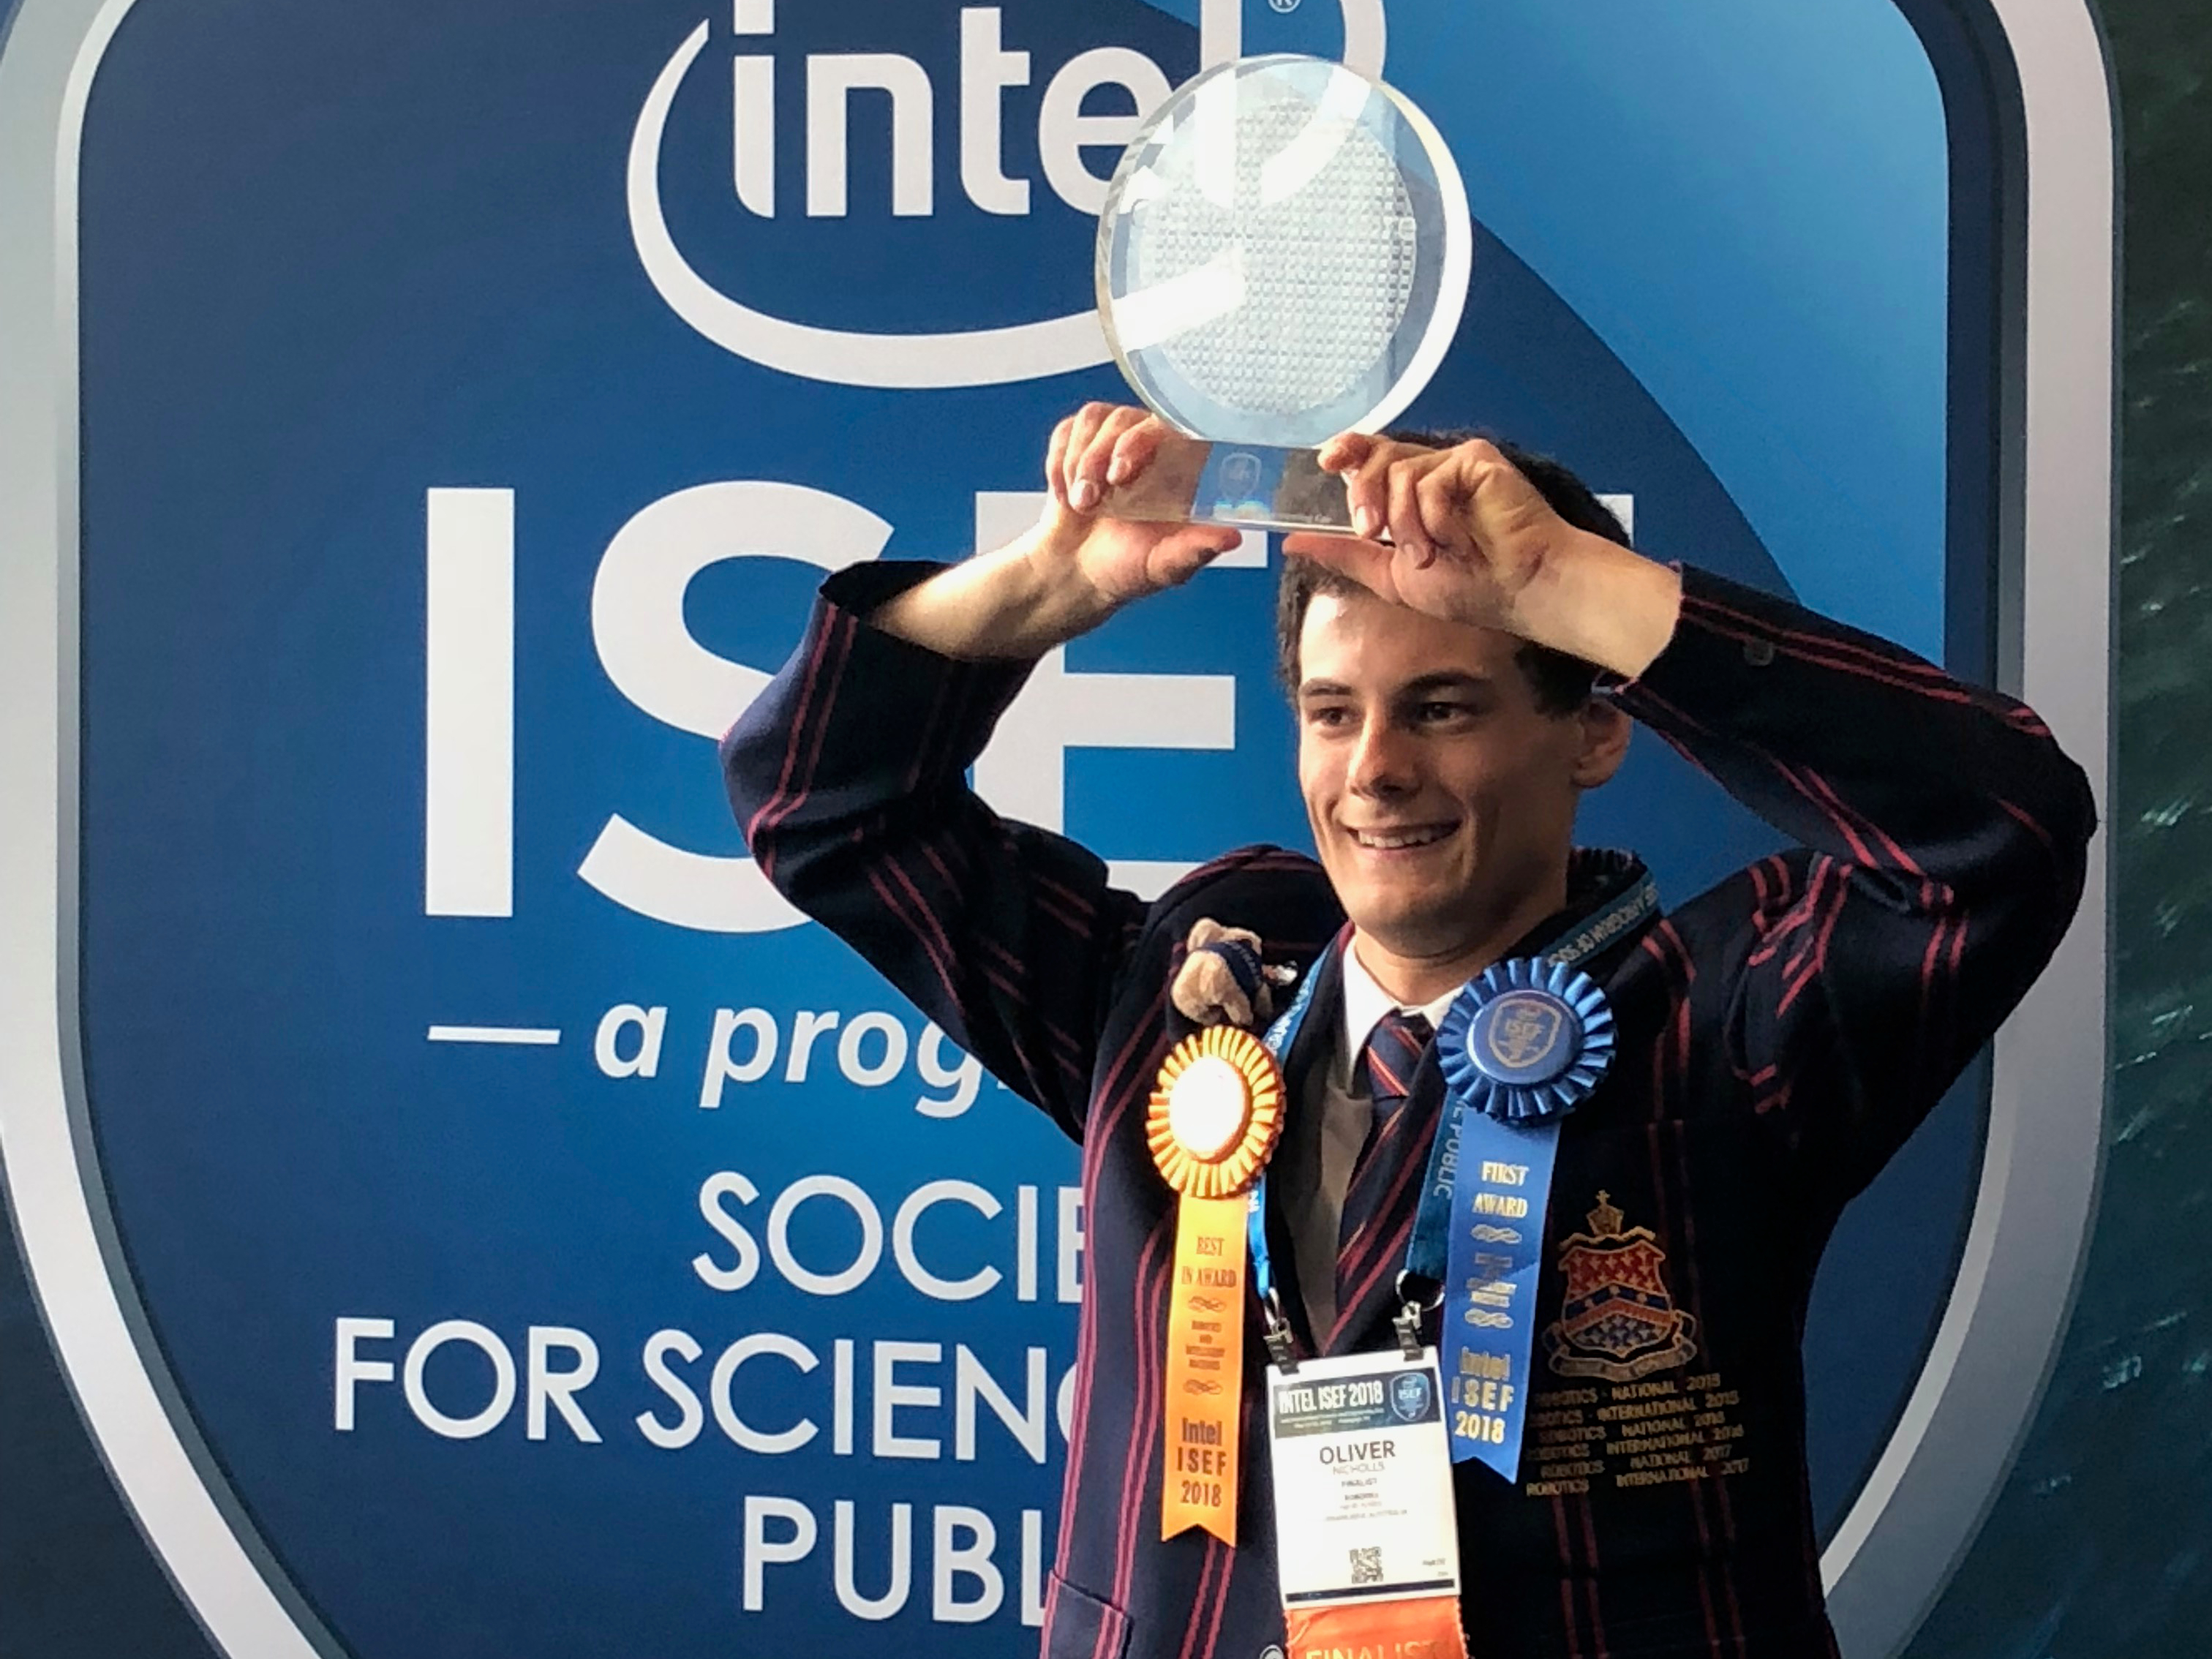 Oliver Nicholls holding trophy in front of Intel ISEF Banner.